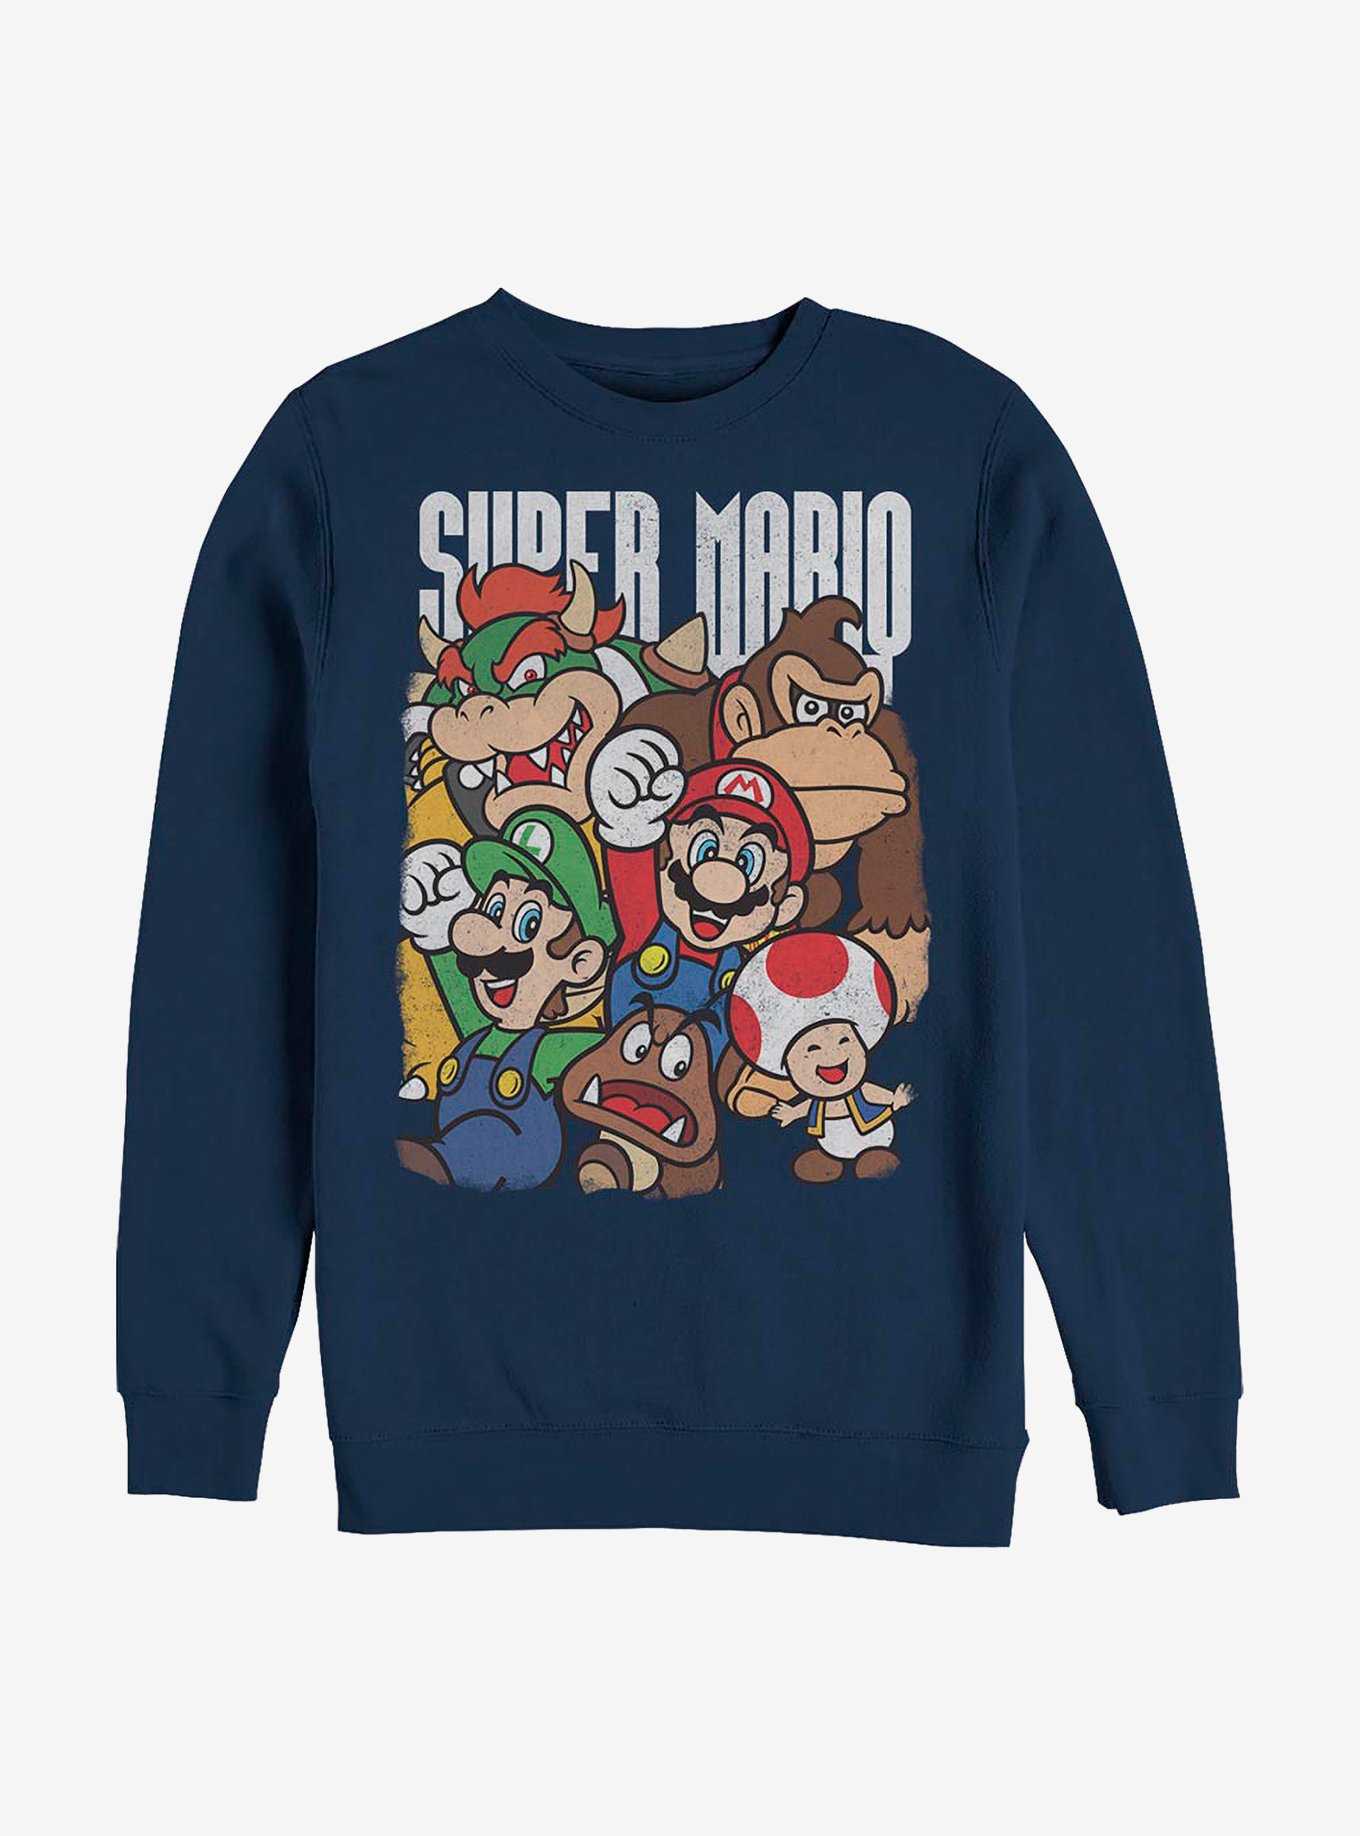 Nintendo Mario Super Group Crew Sweatshirt, , hi-res